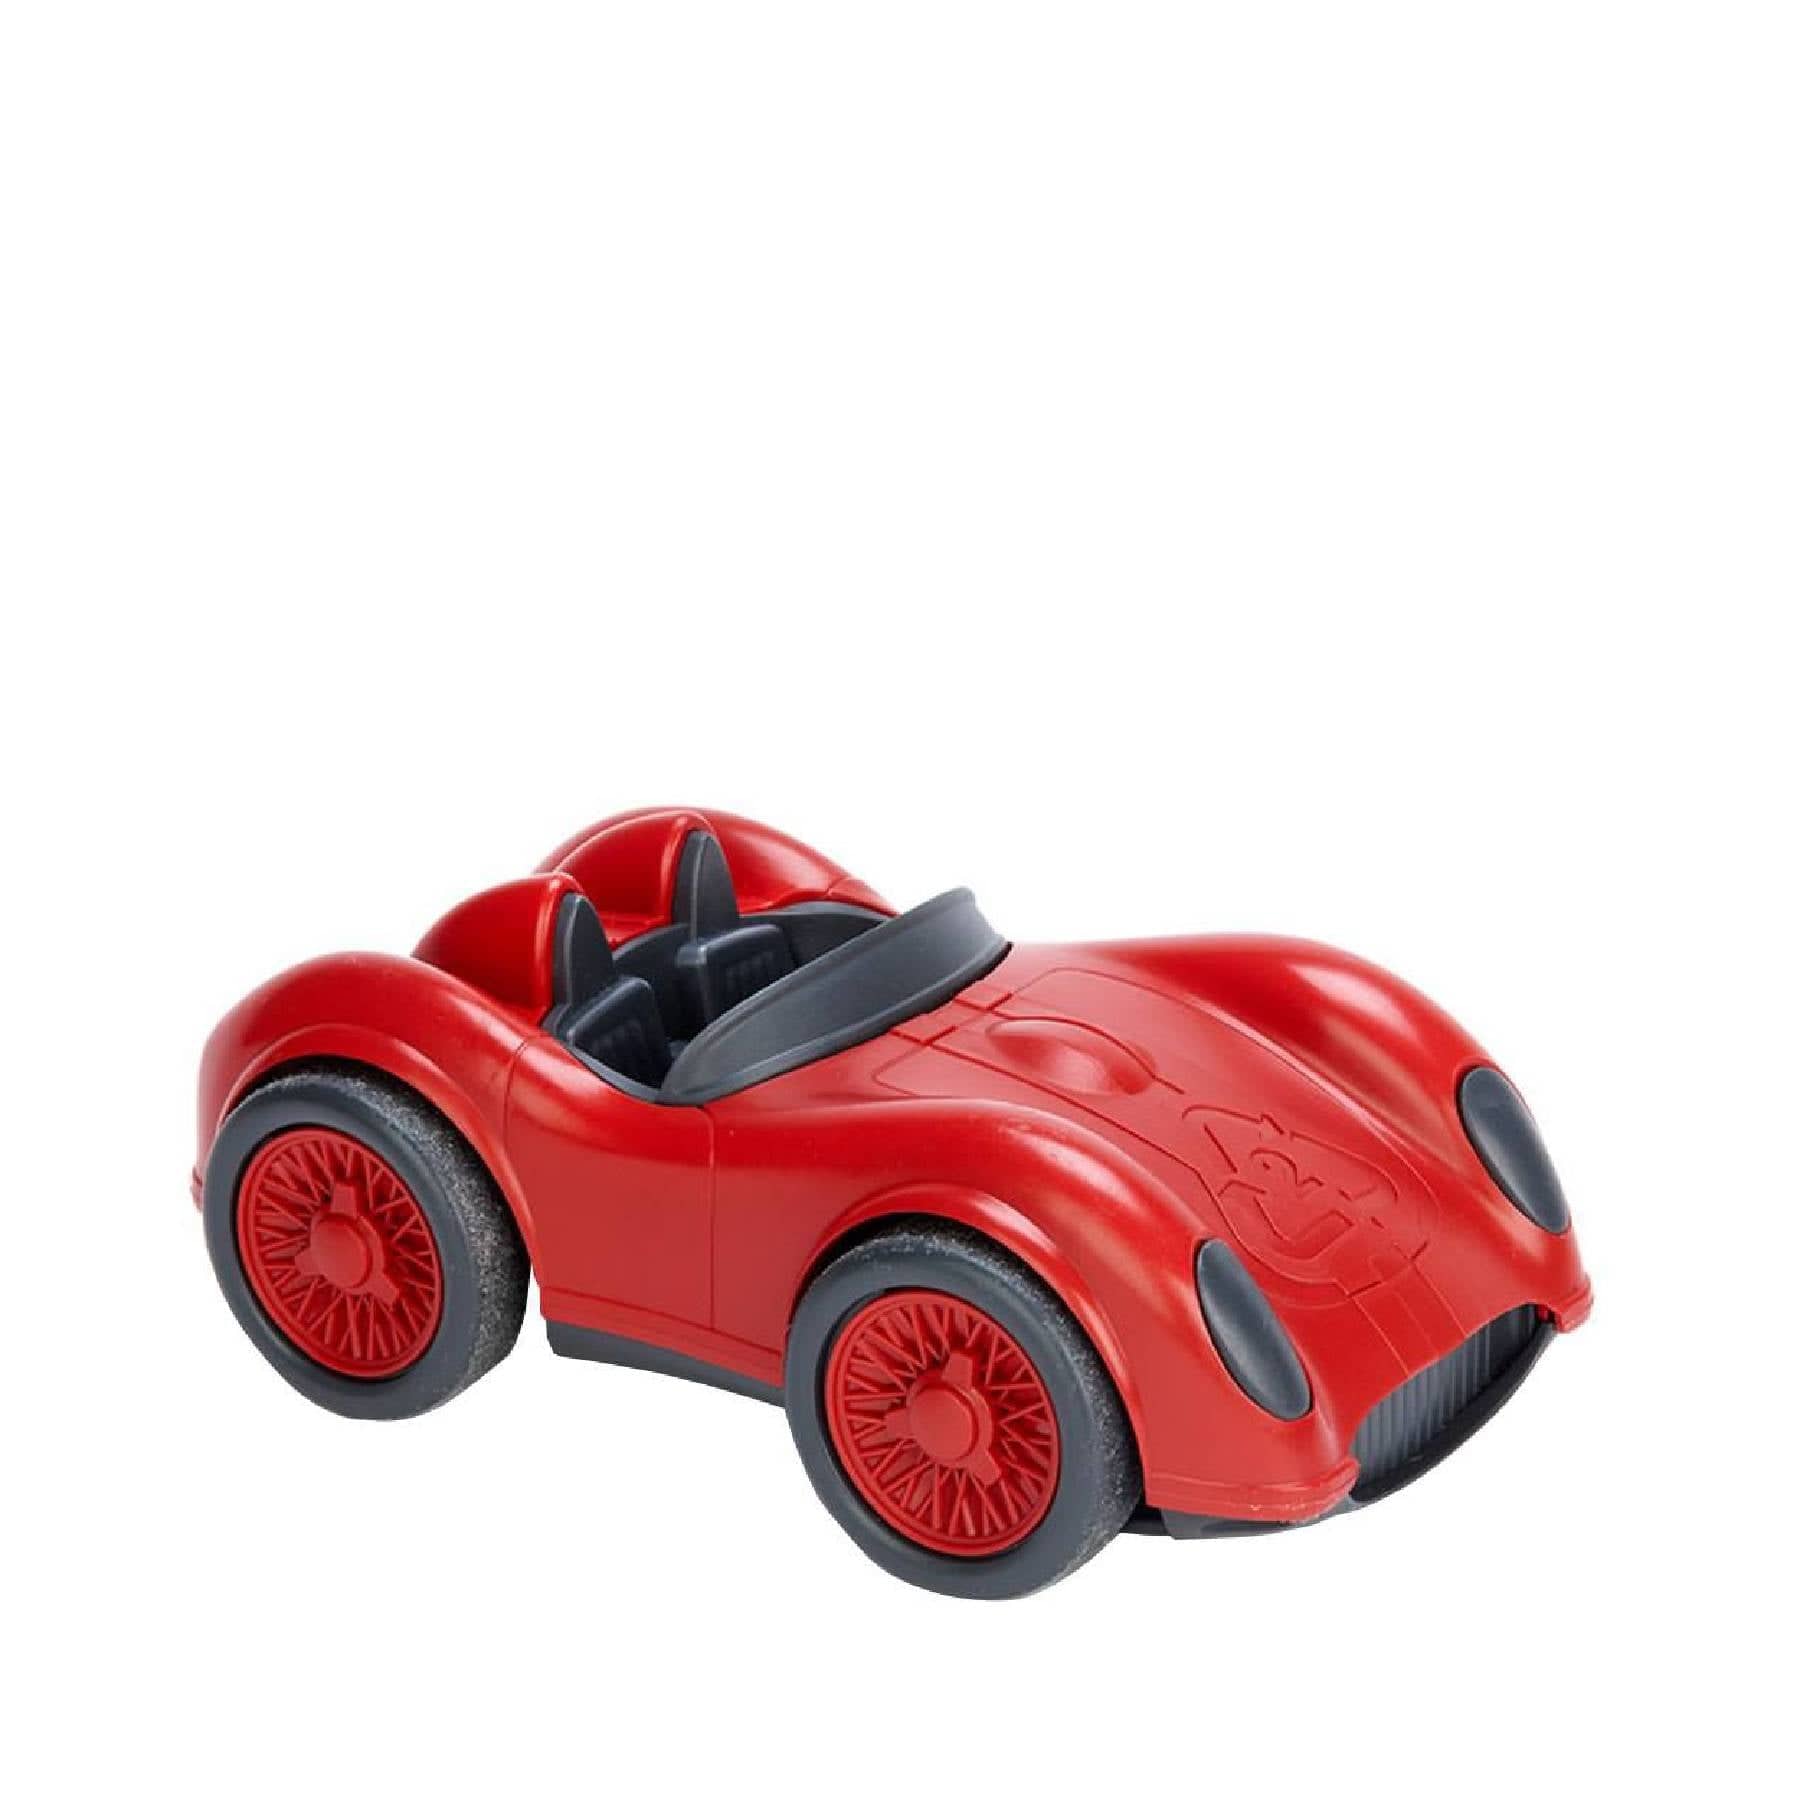 Racing car red